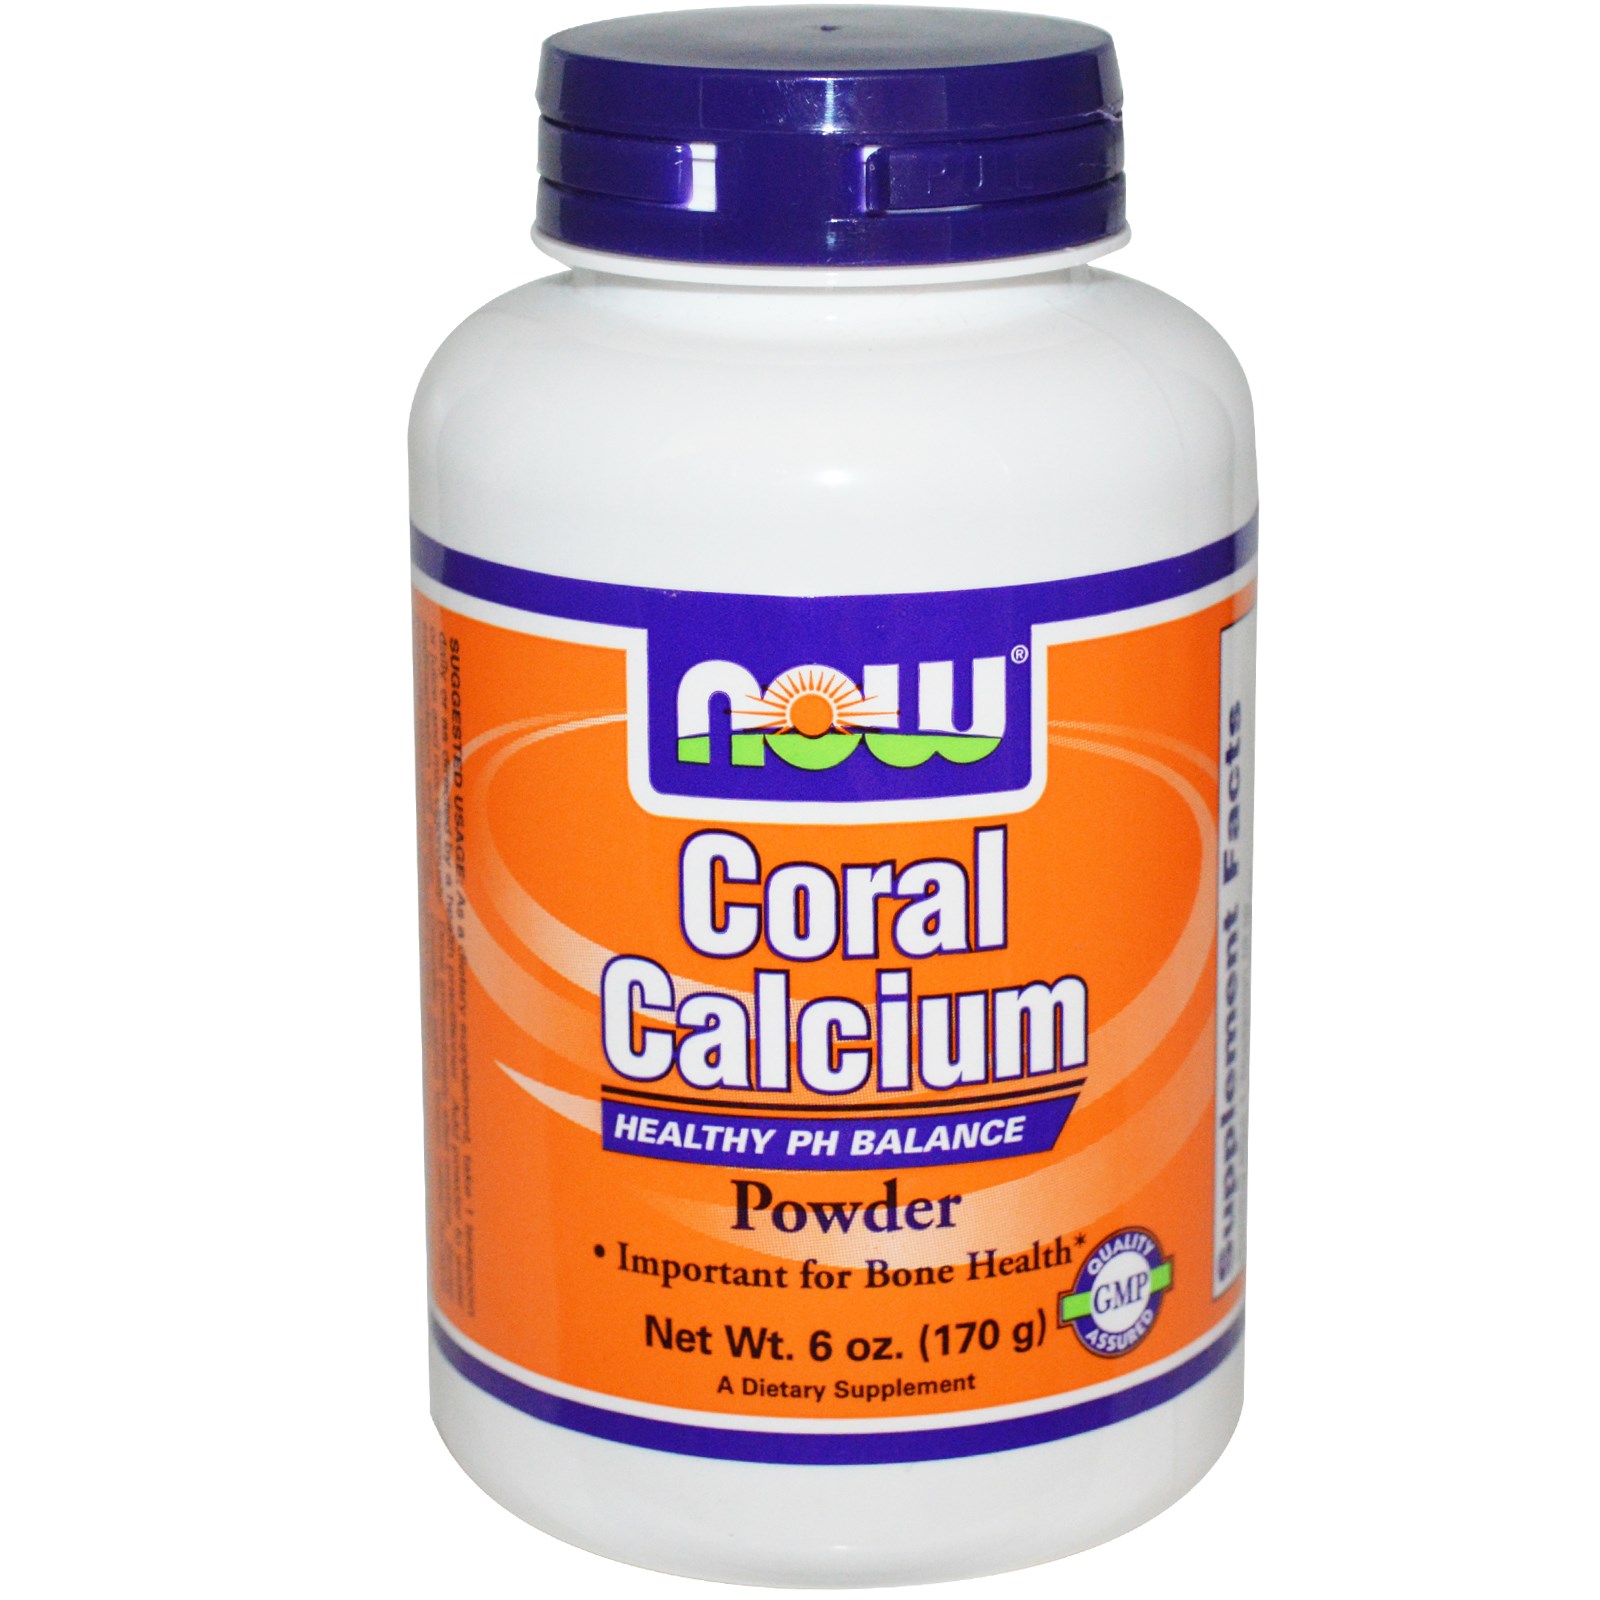 Coral Calcium Powder - 6 oz.